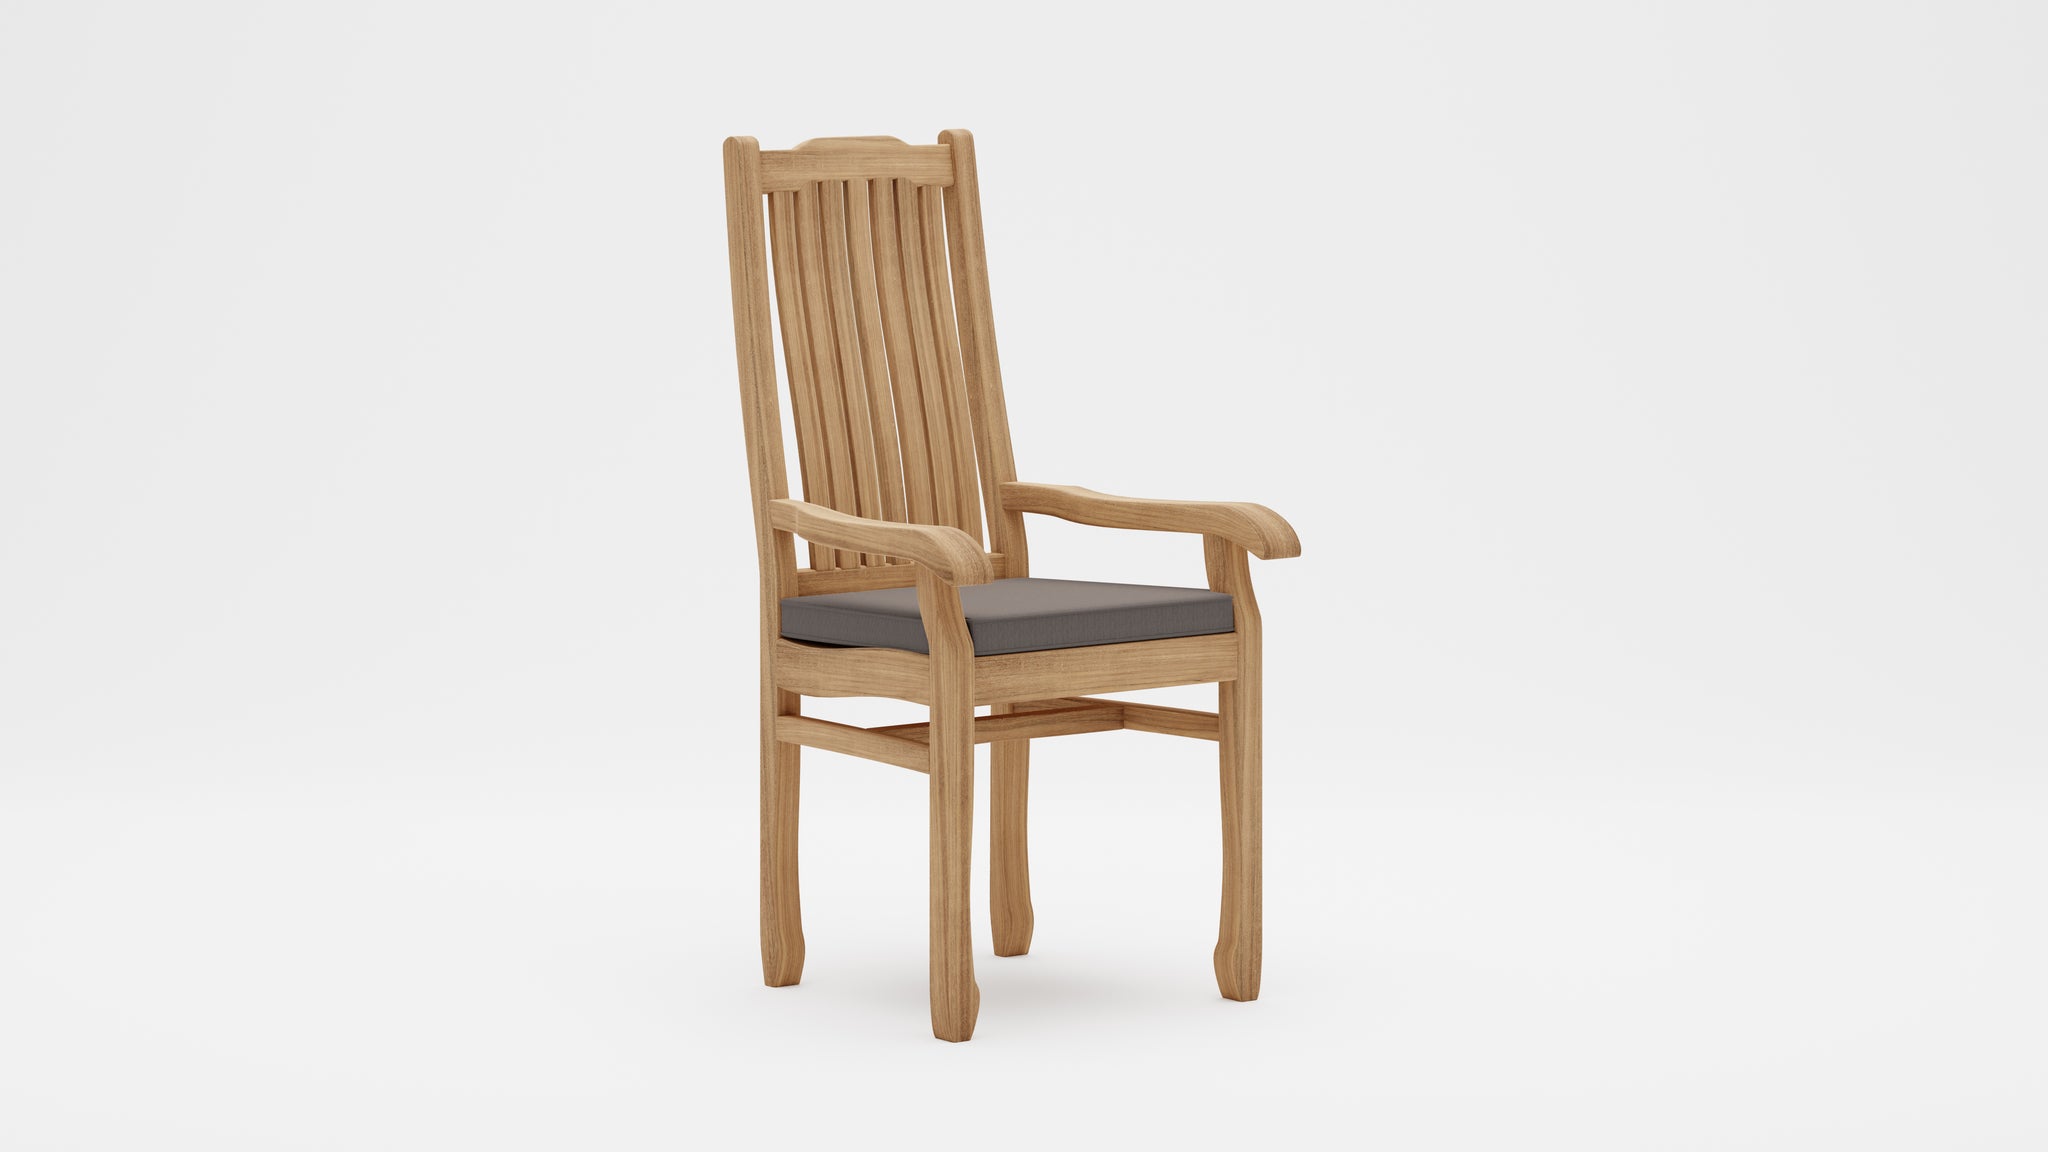 Kensington Teak Carver Chair with Light Grey Cushion